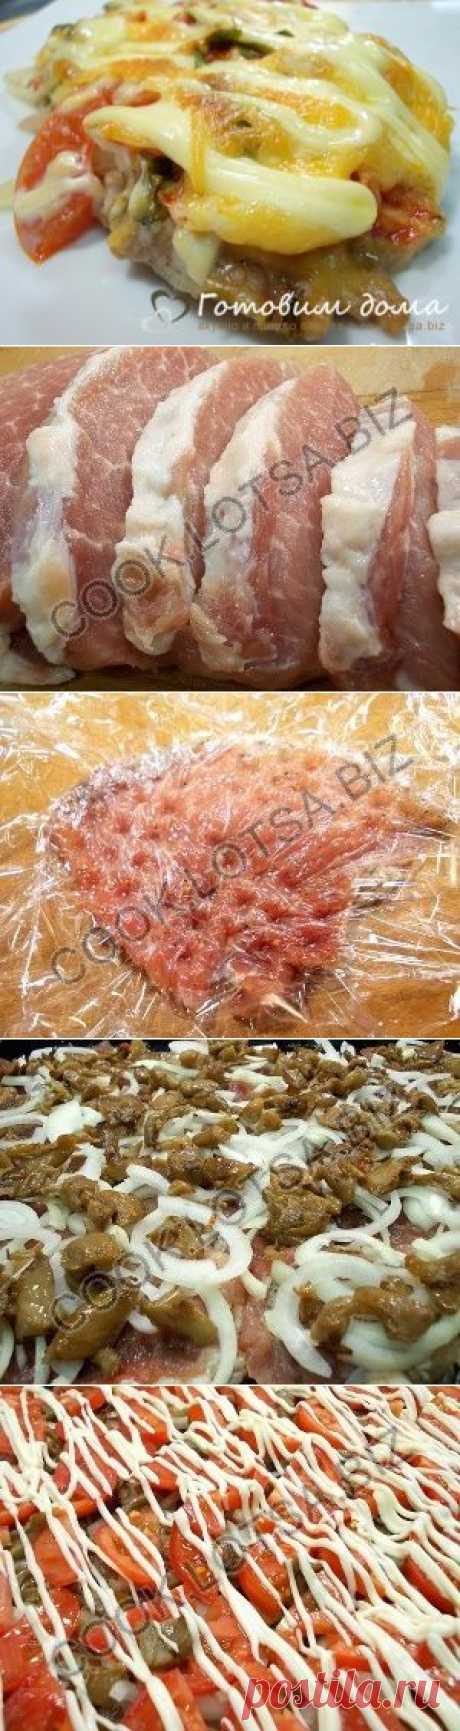 Мясо по-французски с грибами готовим дома рецепт с фото